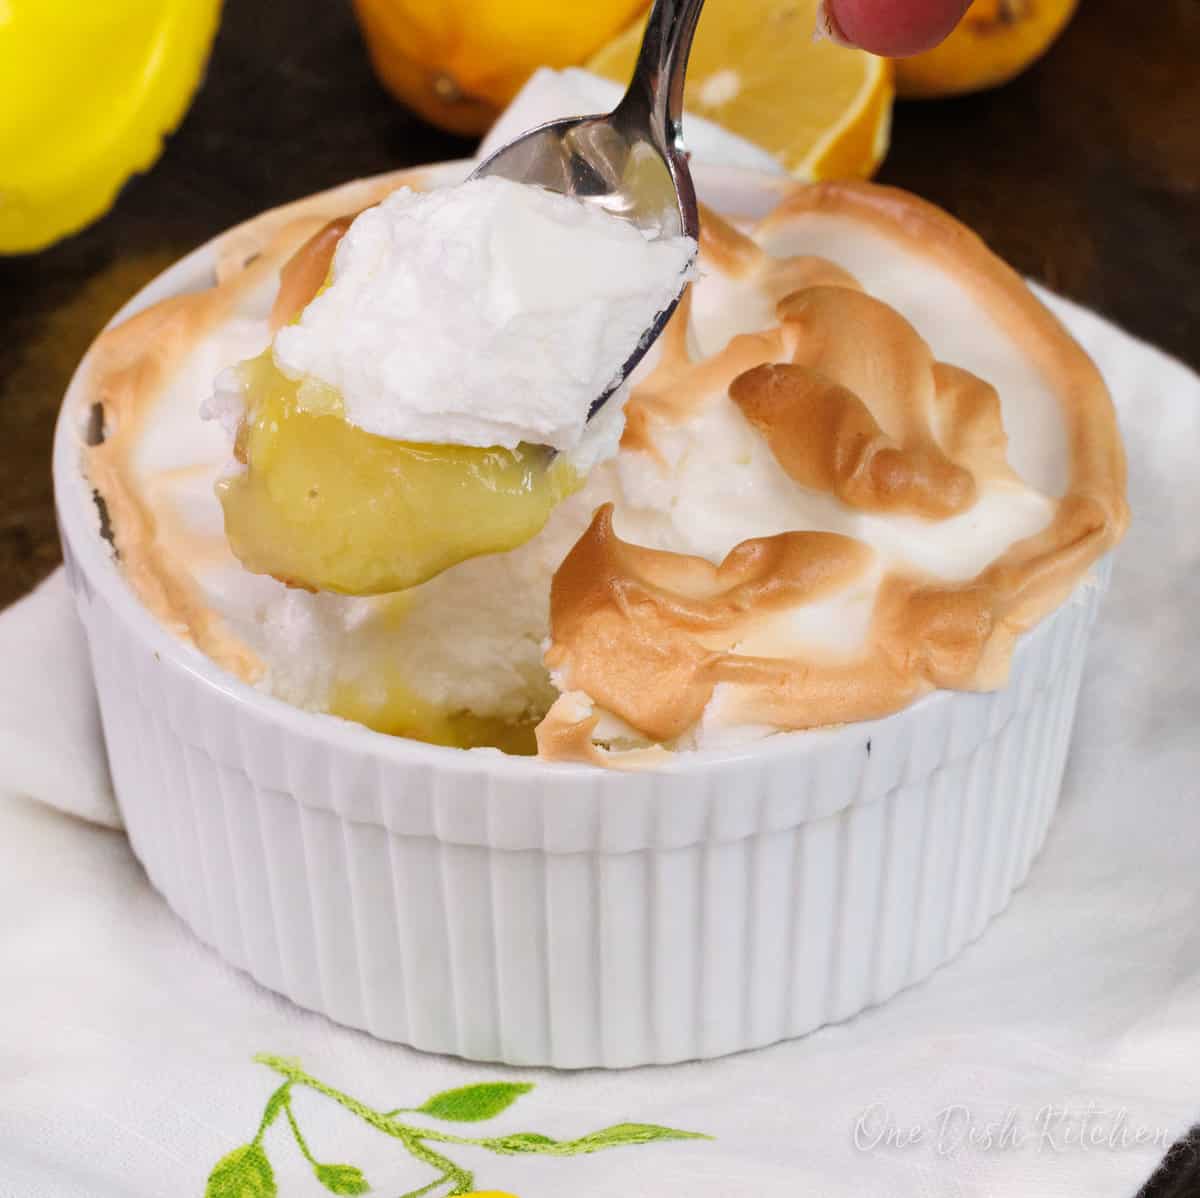 a spoon holding a bite of lemon meringue pie.